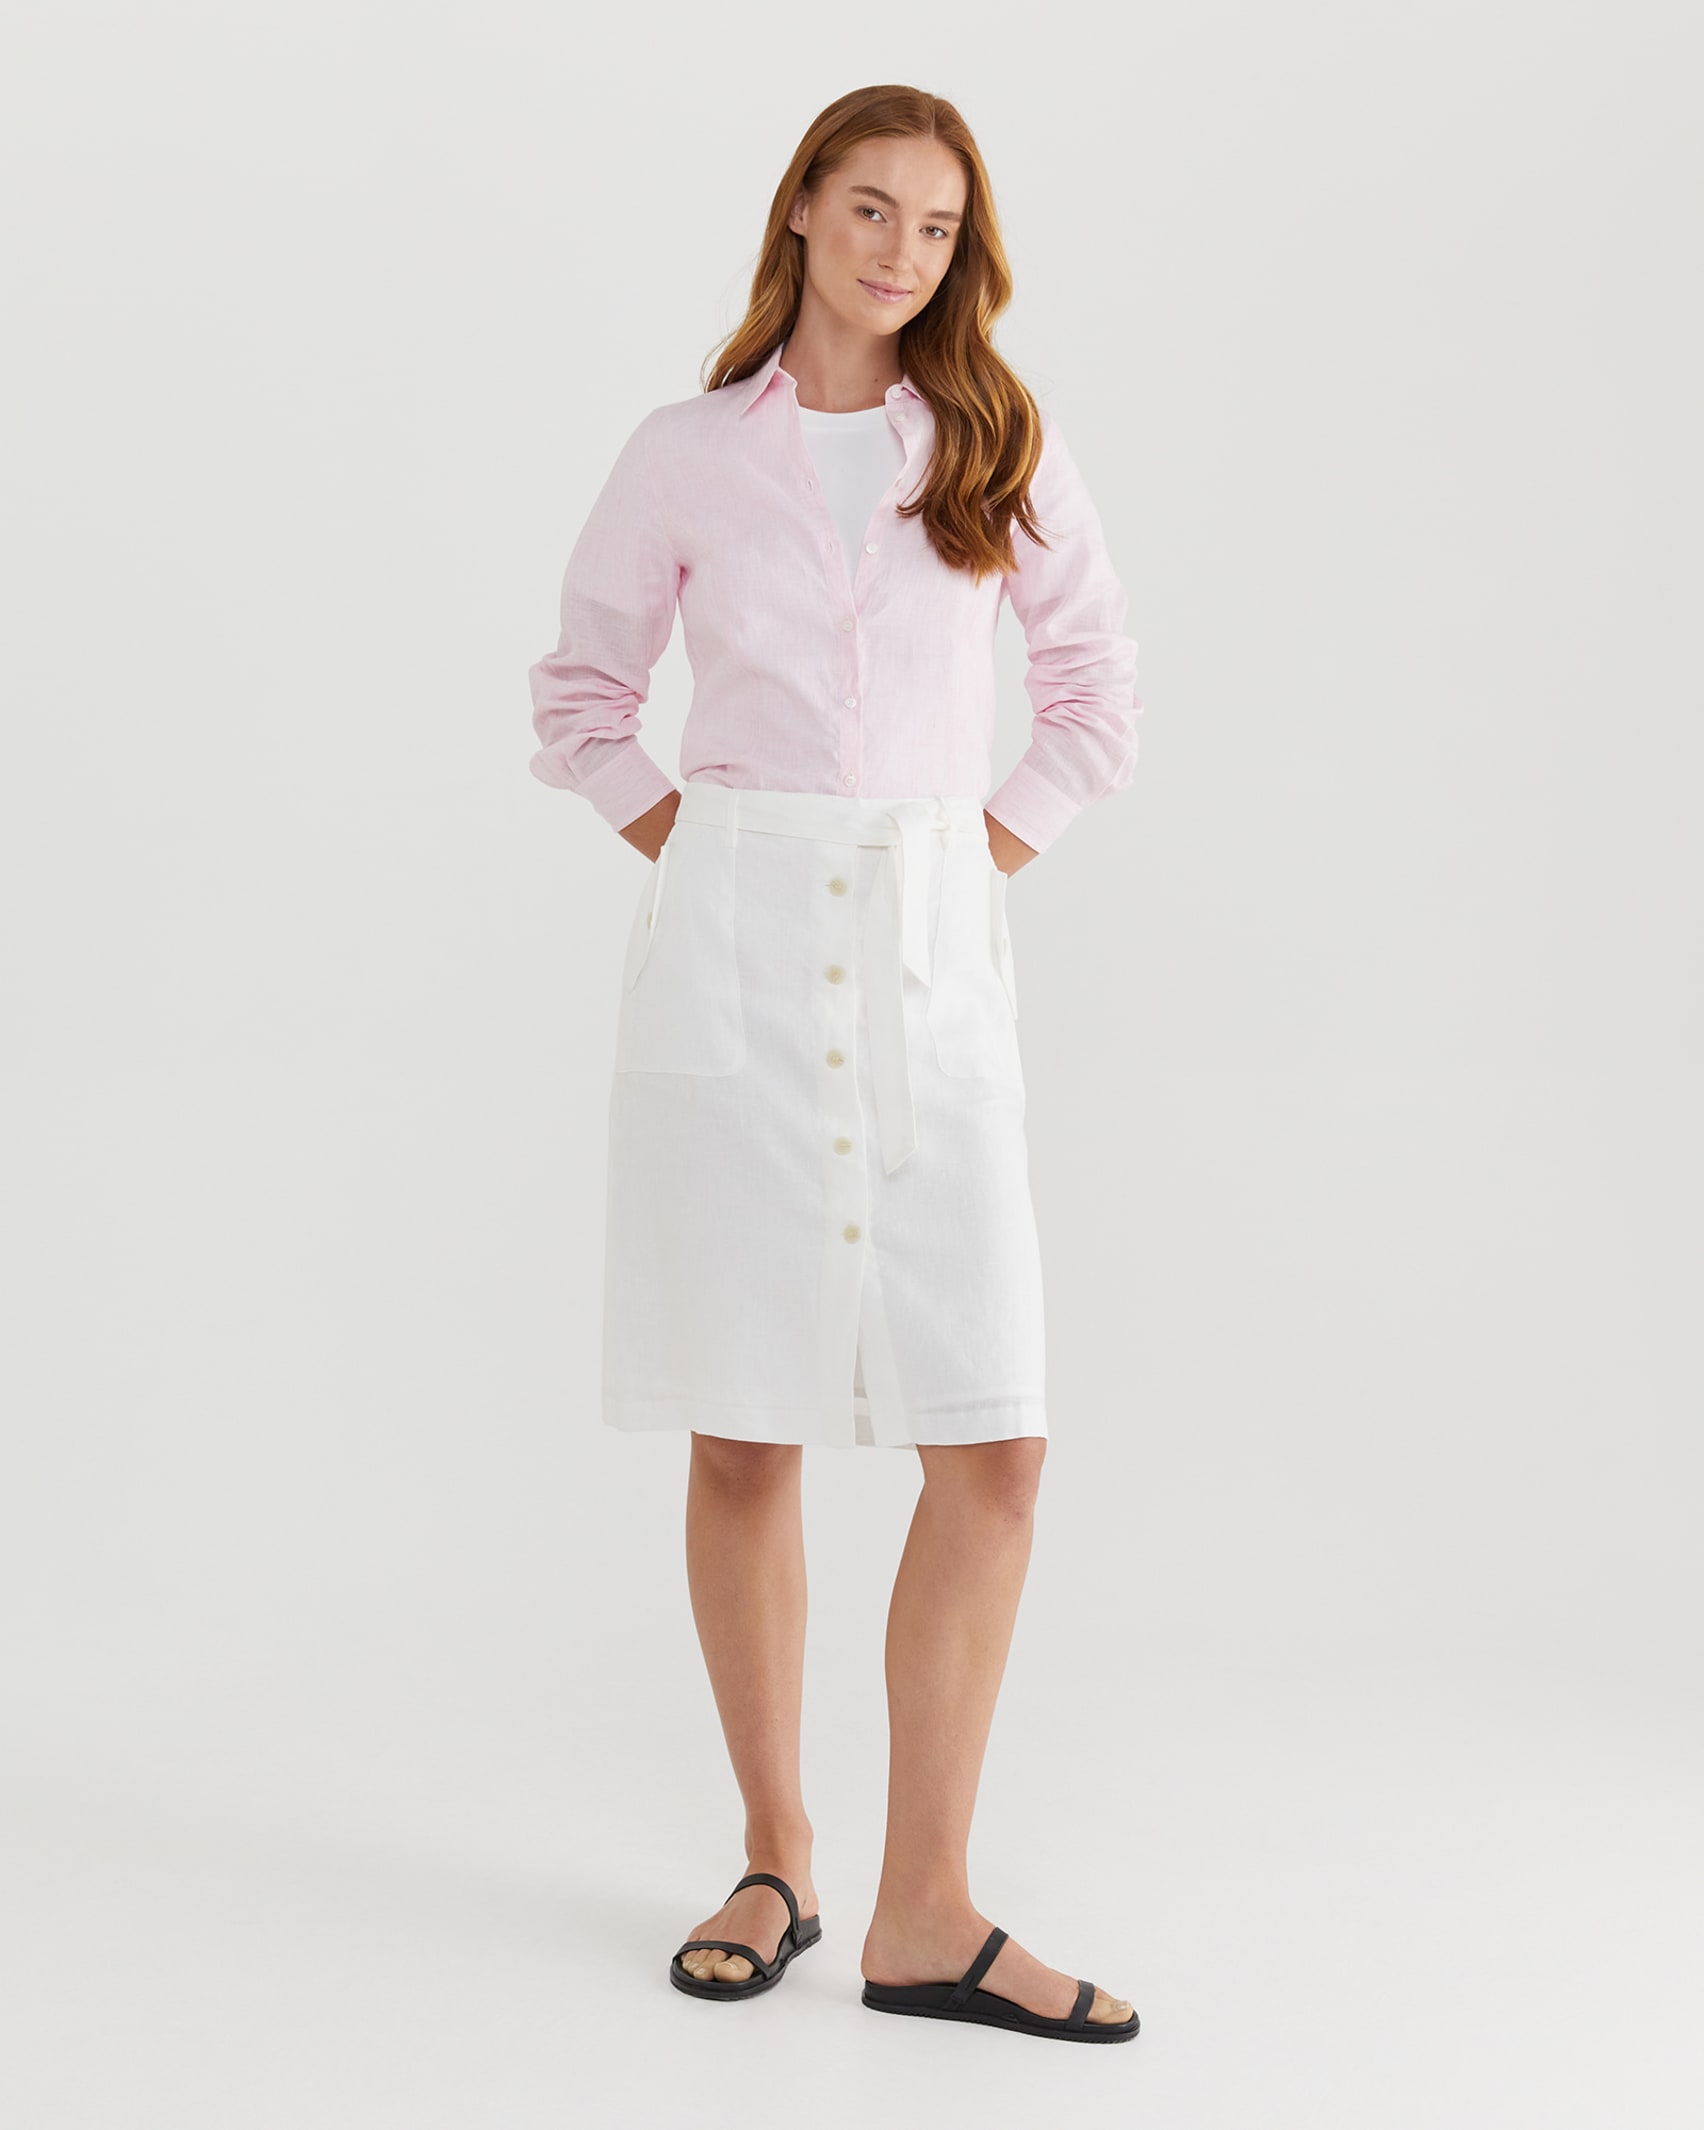 Josie Linen Tie Skirt in WHITE